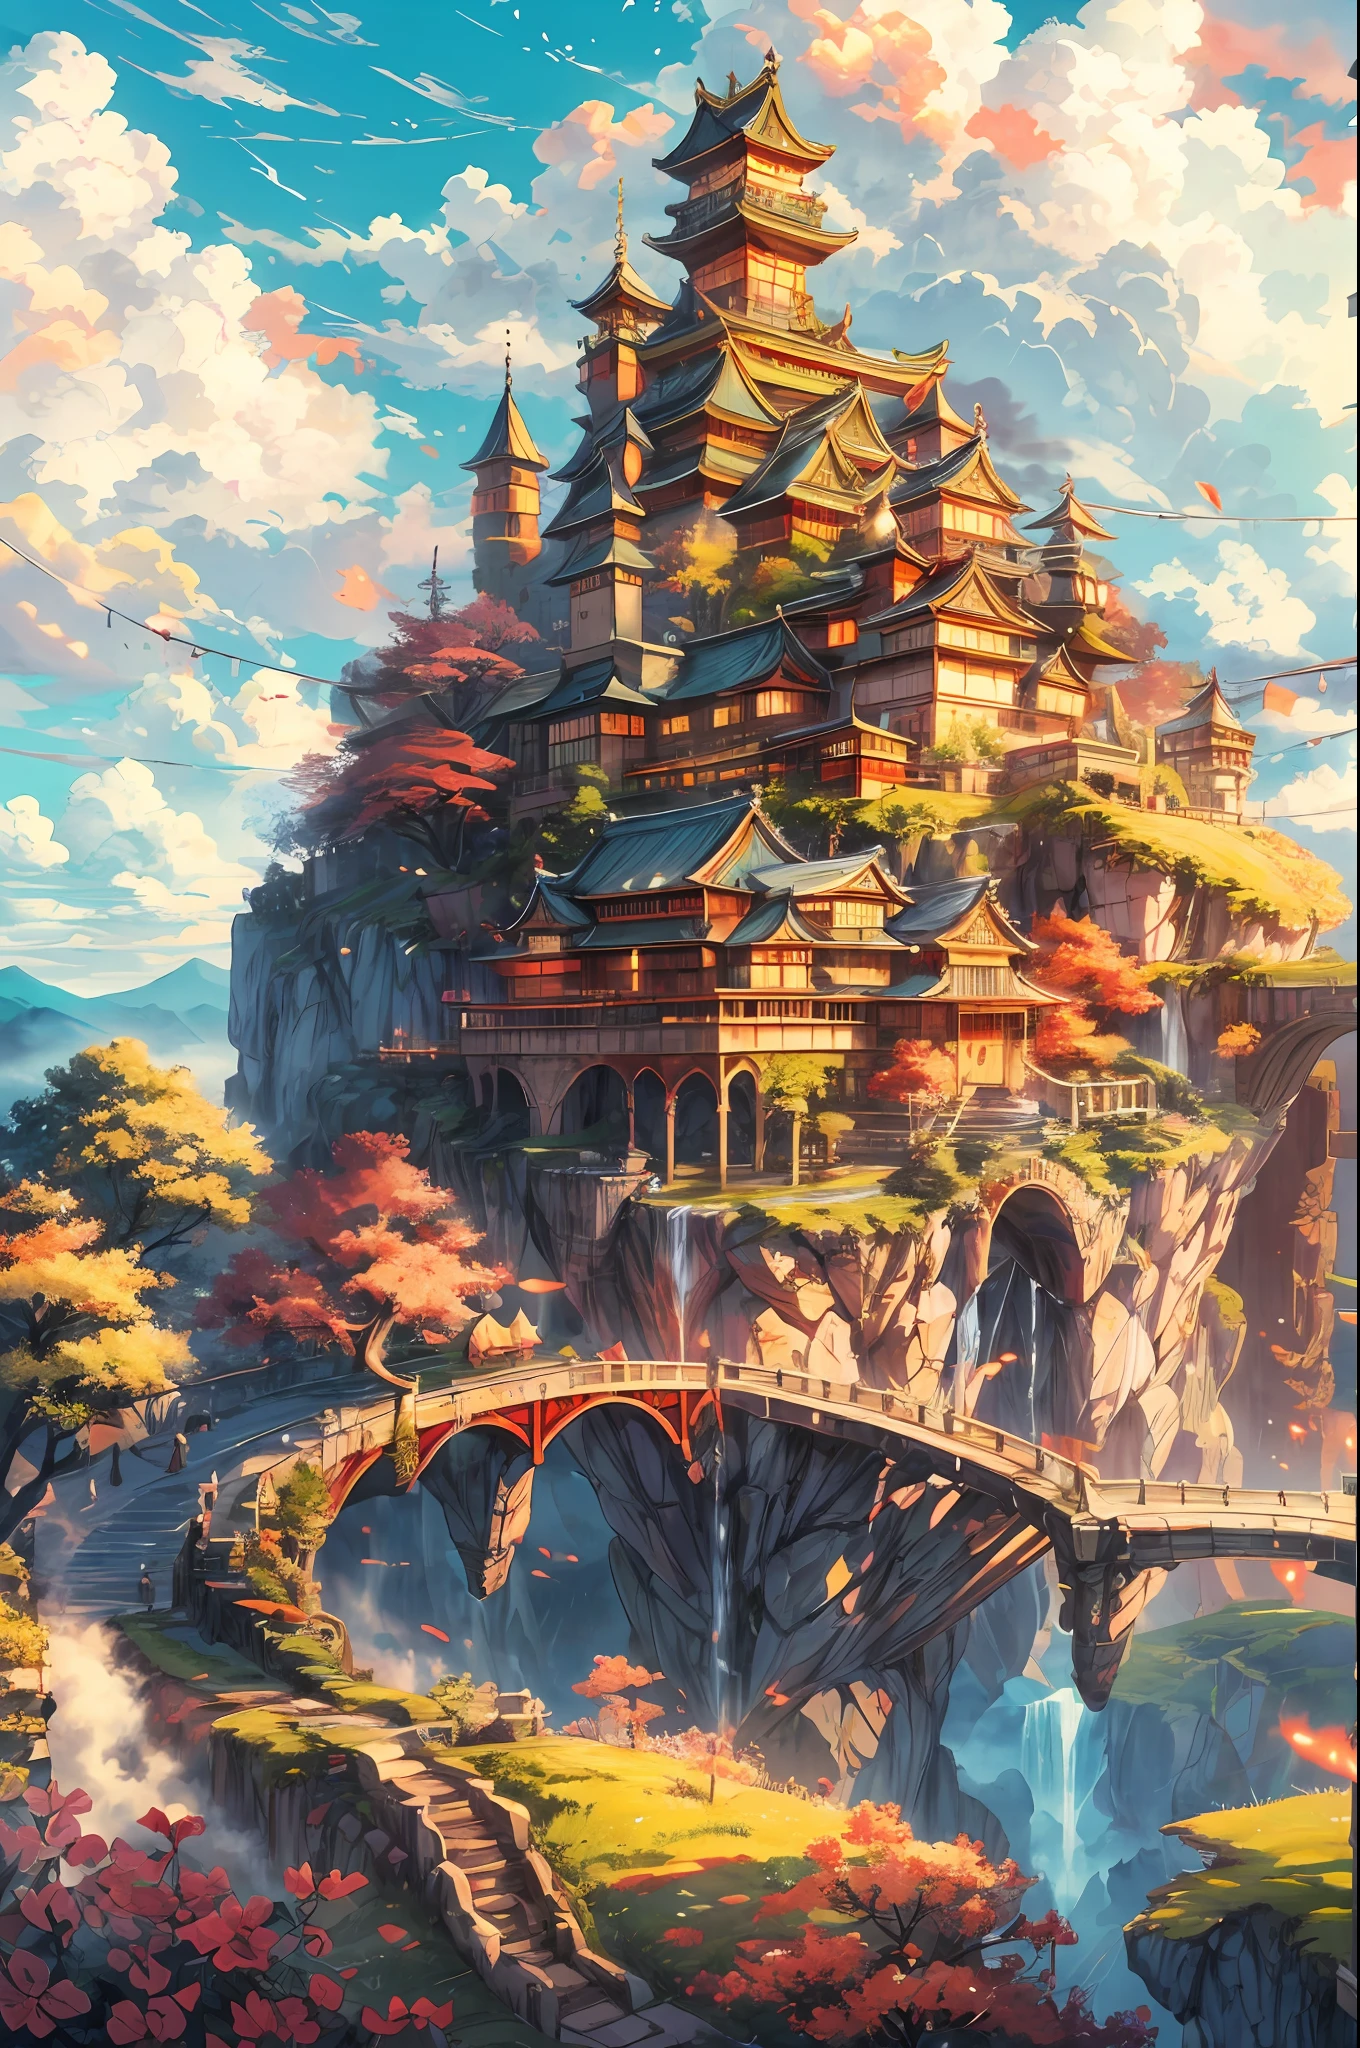 "Un majestuoso castillo flotando en una isla celeste, Con reminiscencias de una fortaleza de estilo japonés, suspendido sobre nubes esponjosas, disfrutando del cálido resplandor del sol, irradiando colores vibrantes. Obra maestra."